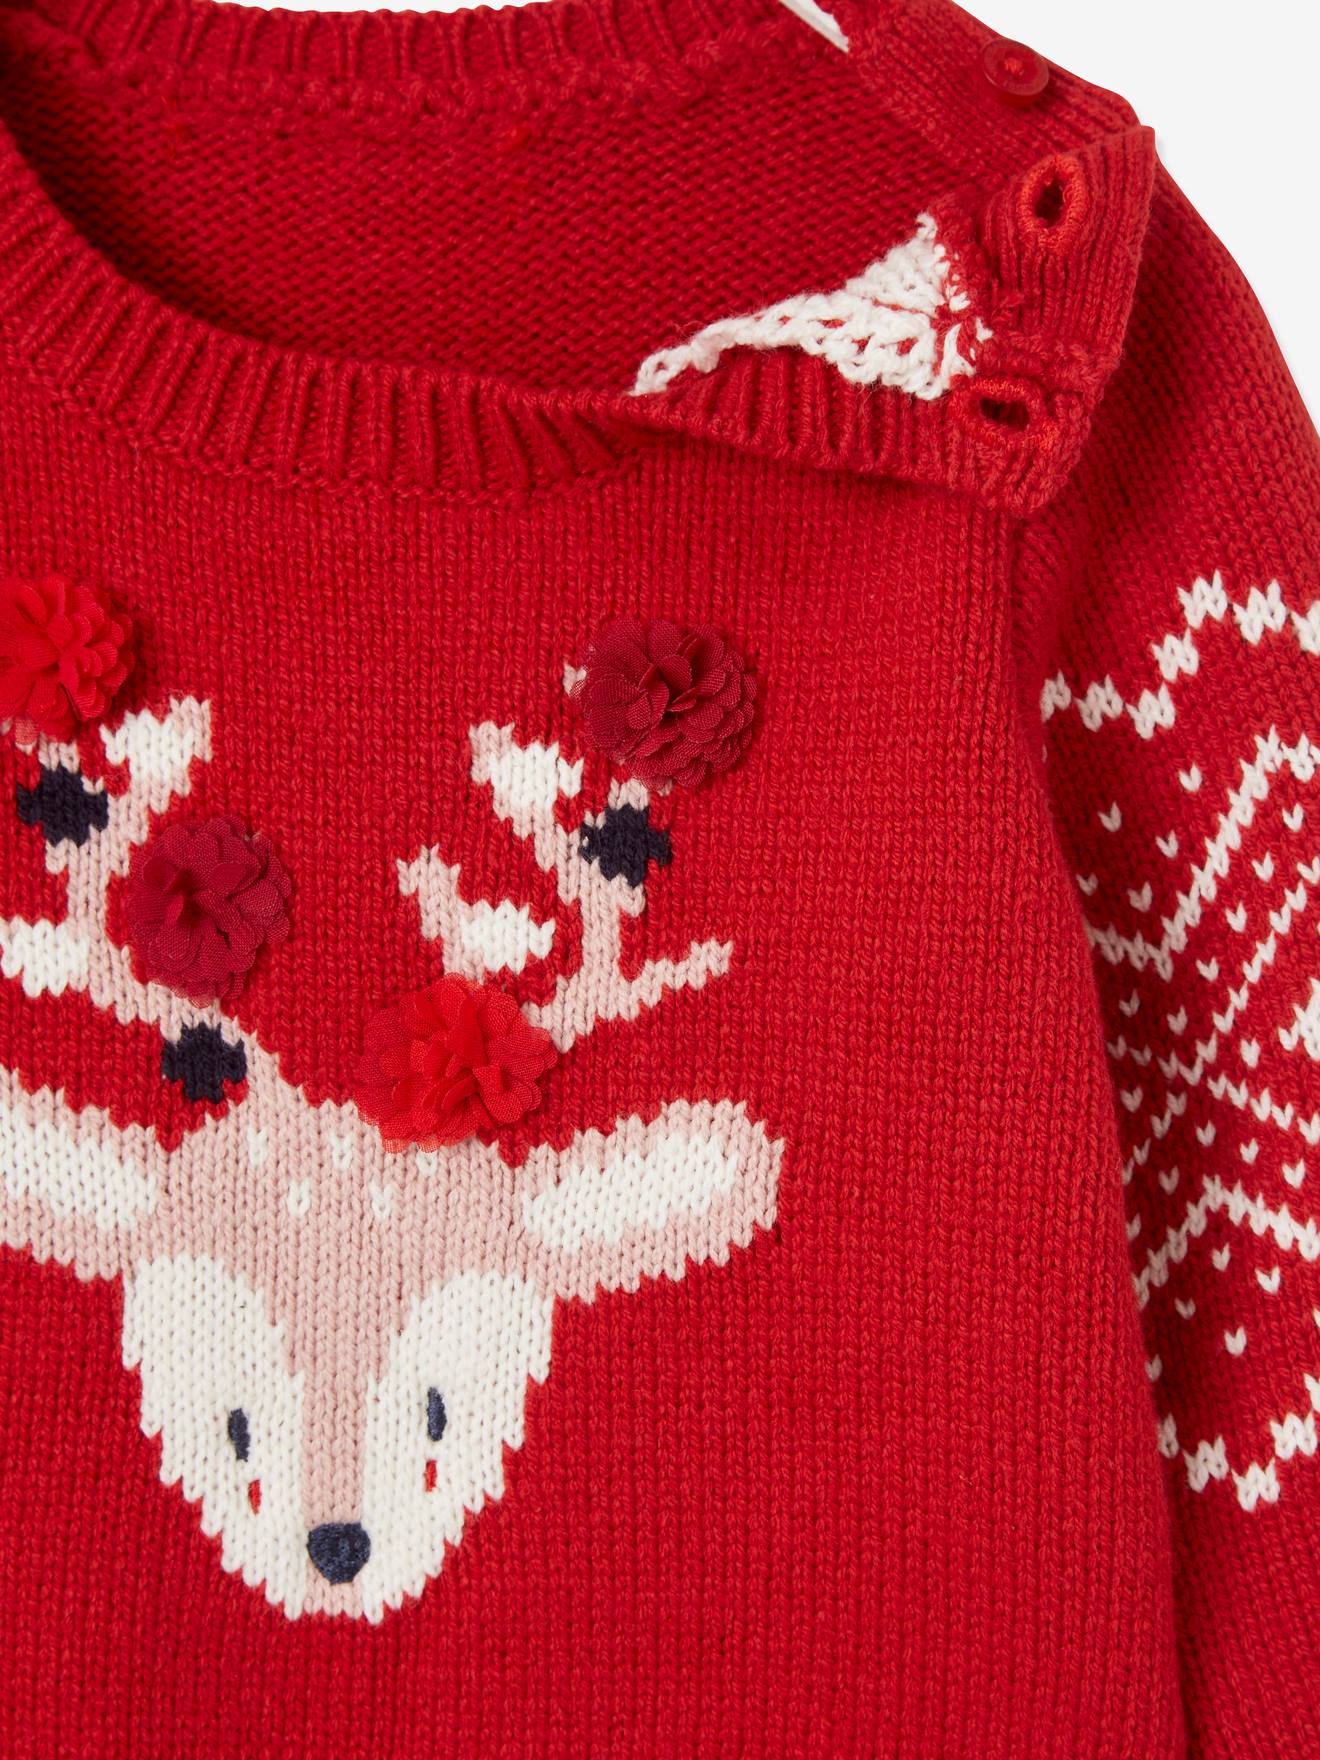 Vêtements de Noël bébé Elk Pullover Nouveau-né chandail tricot coton bébé  Meilleurs vêtements d'hiver pour enfants - Chine Décorations de Noël et  Décoration de Noël prix